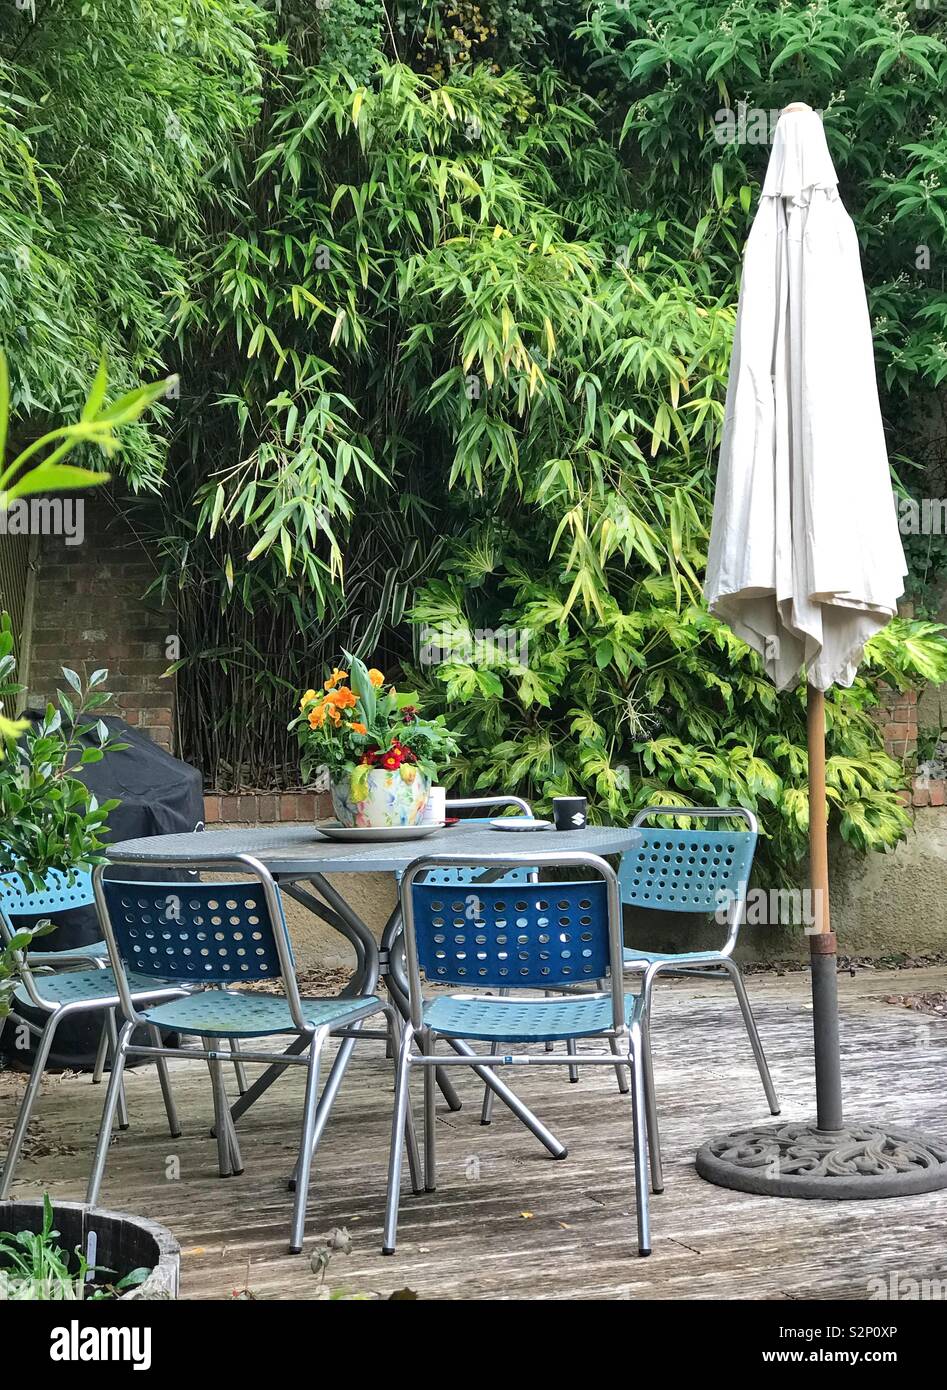 Garden table, chairs, umbrella Stock Photo